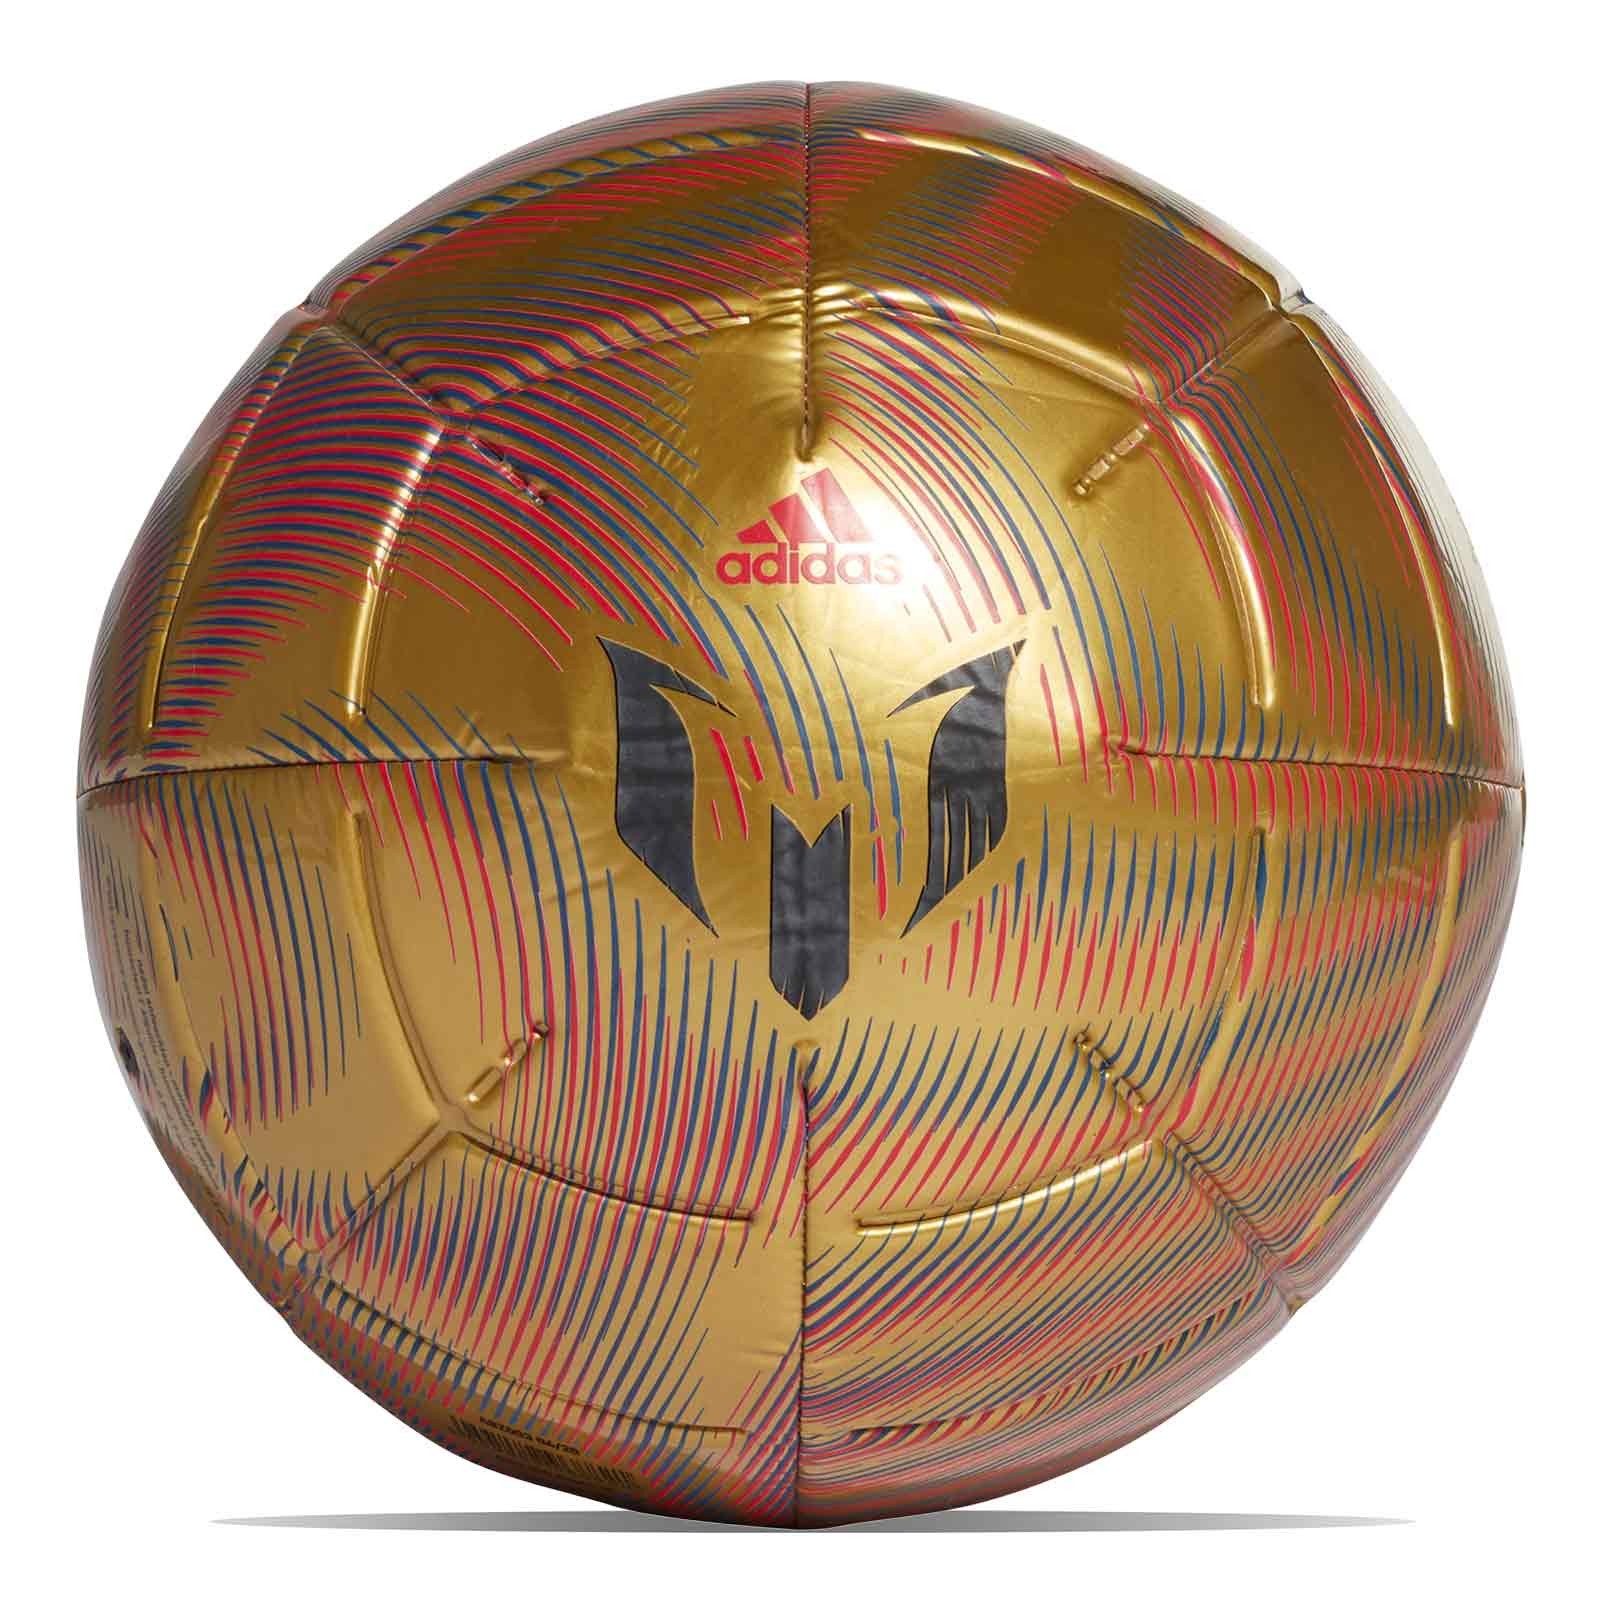 preocuparse Jadeo Persona Balón adidas Messi Club talla 4 dorado | futbolmania